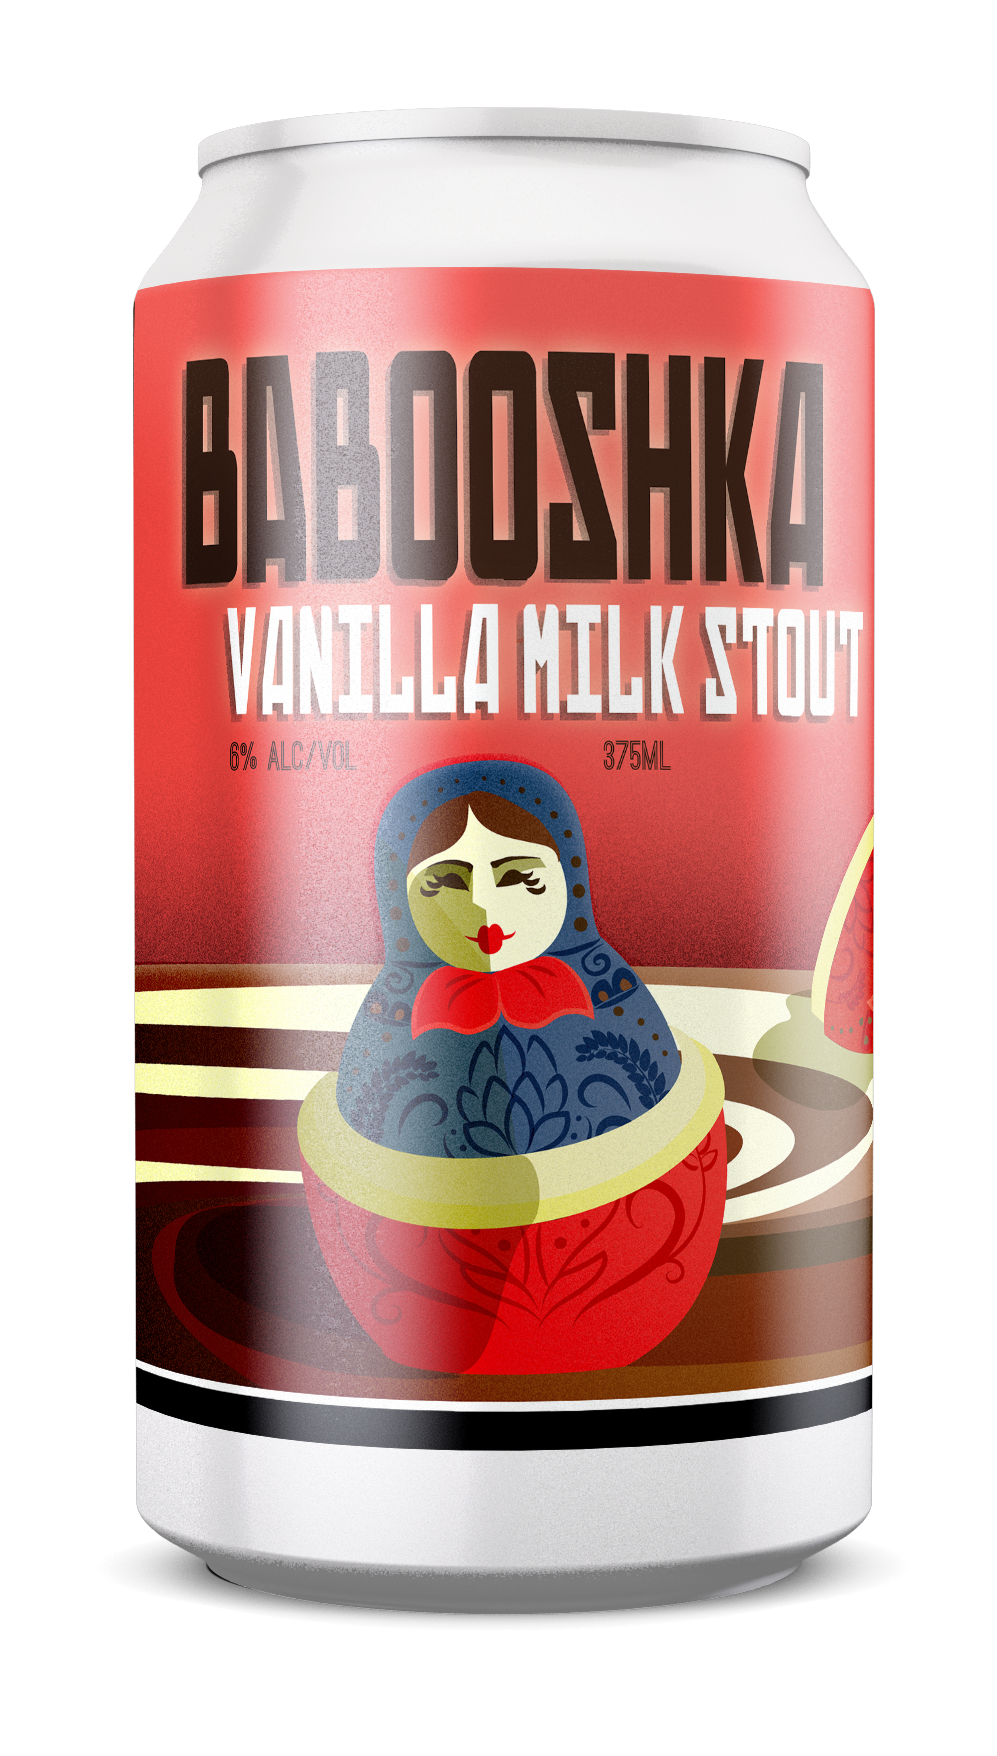 Babooshka - Vanilla Milk Stout